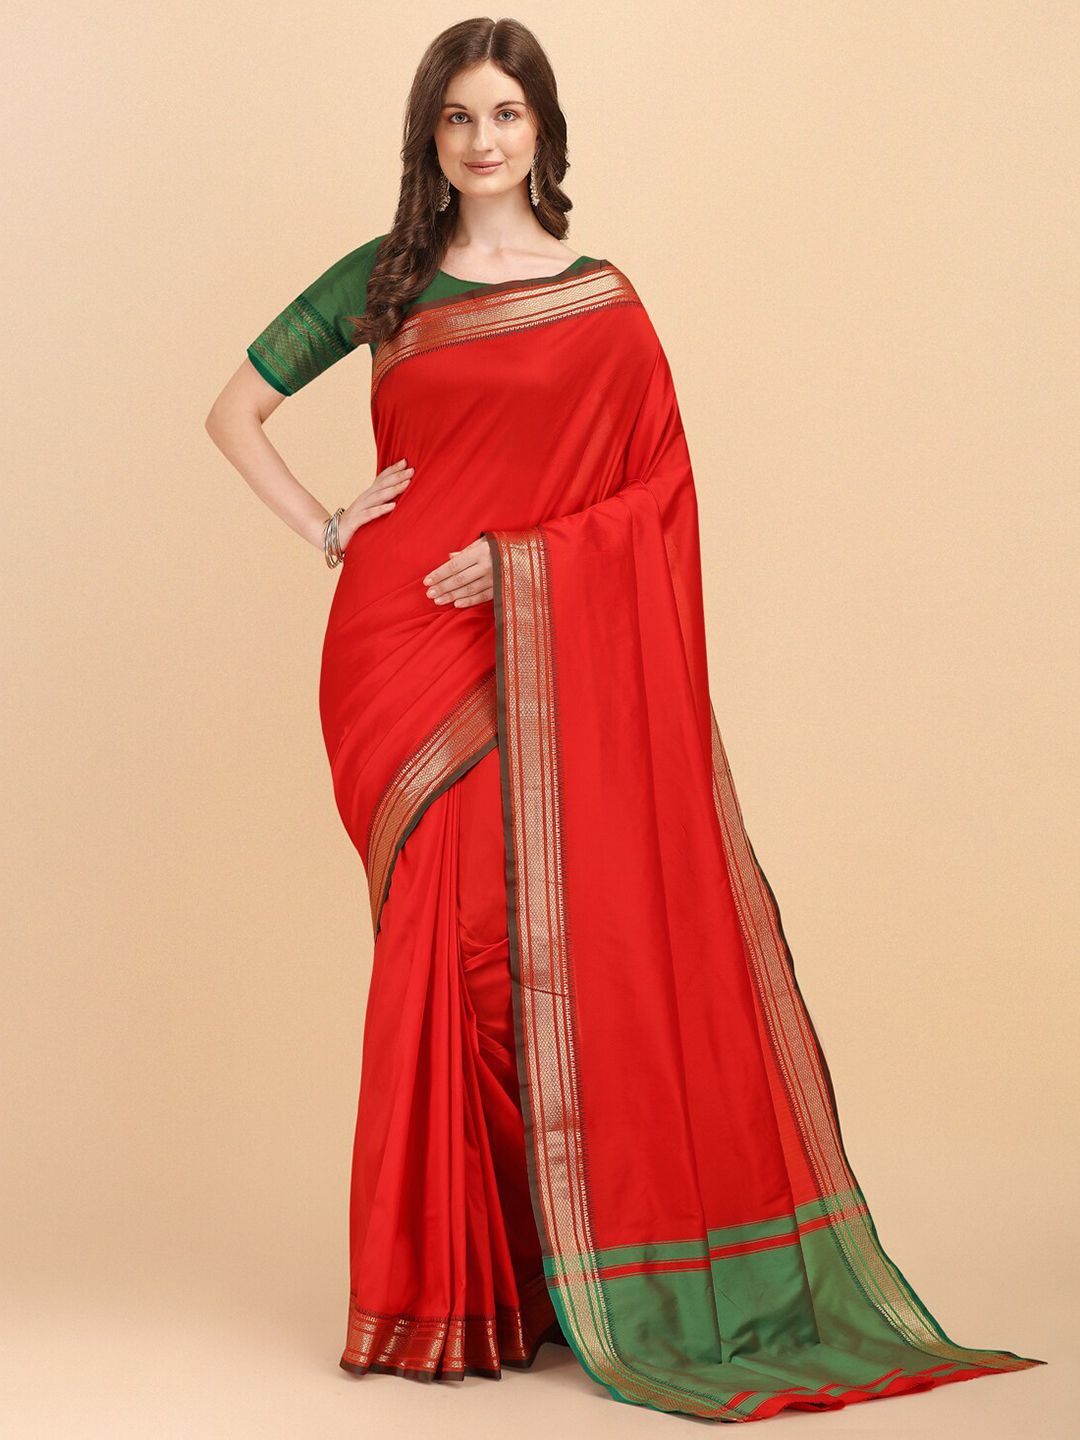 Jinax Red & Green Woven Design Zari Pure Silk Banarasi Saree Price in India